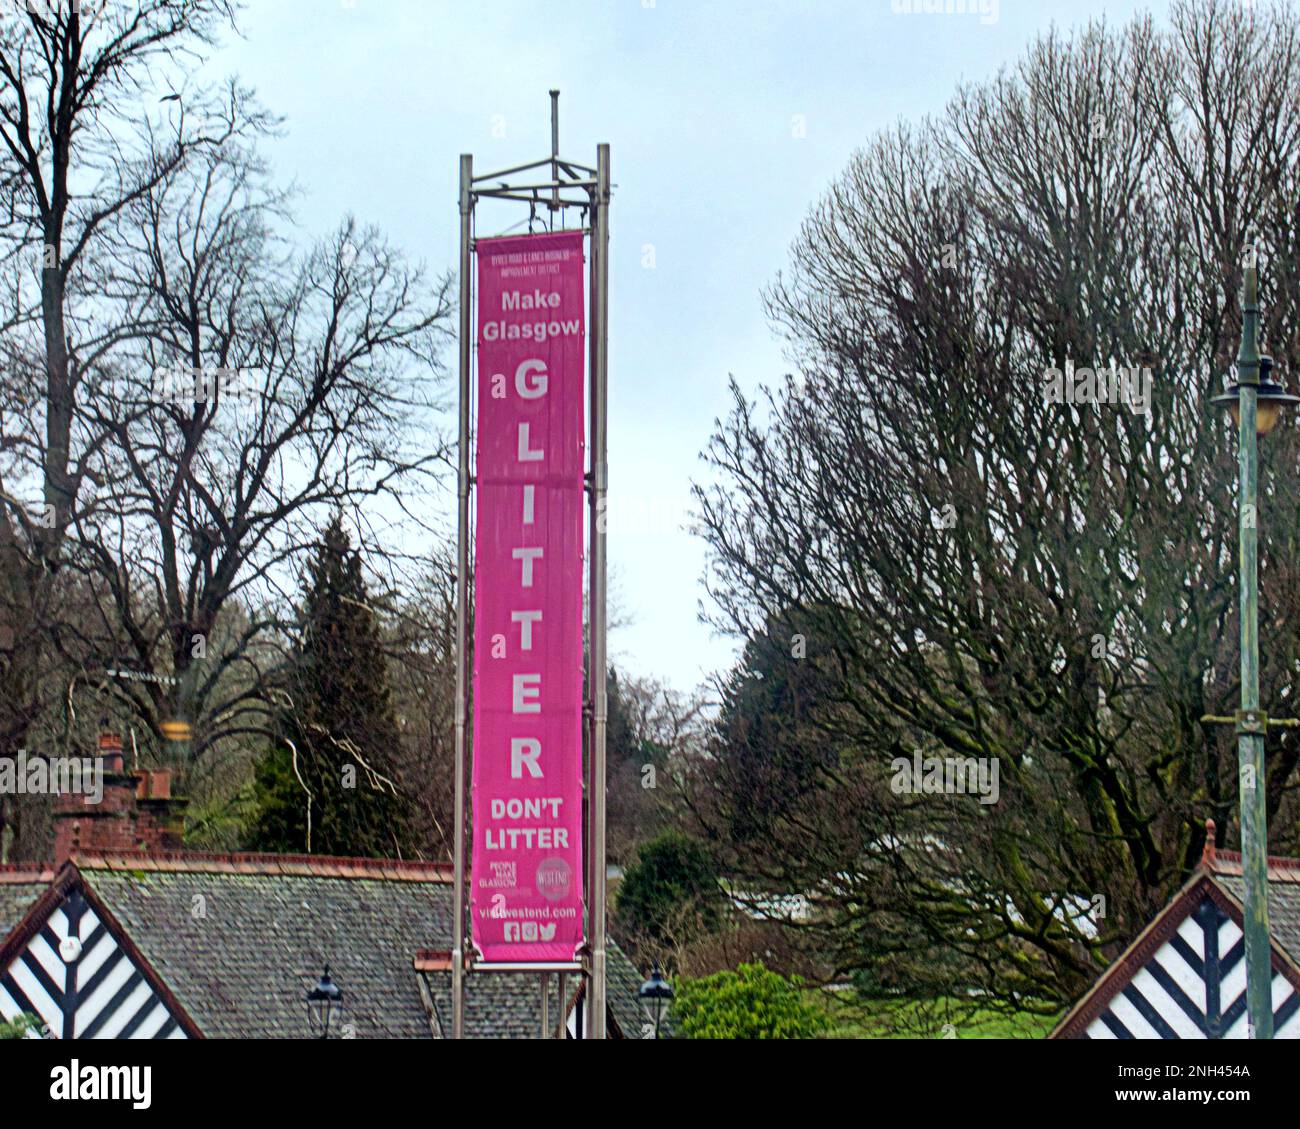 fare glasgow glitter anti lettiera non cucciolate banner presso i giardini botanici su byres road Foto Stock